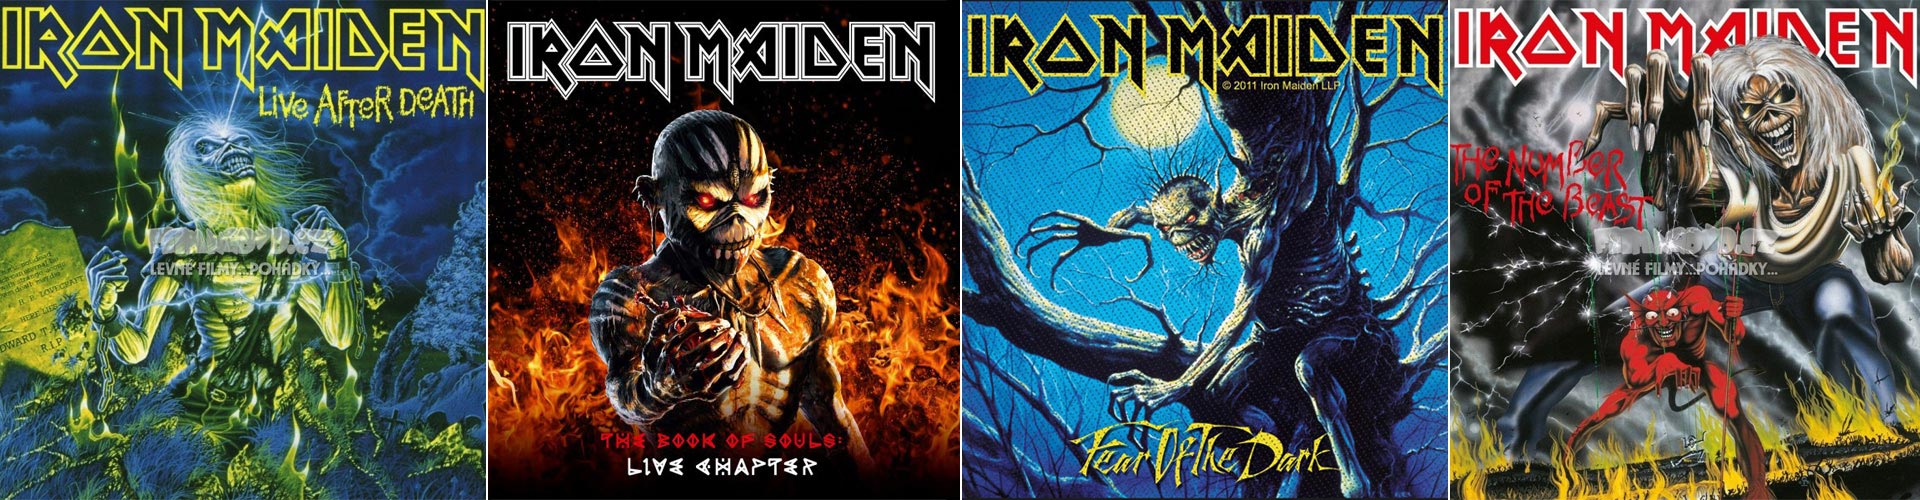 Iron Maiden vinylové LP desky